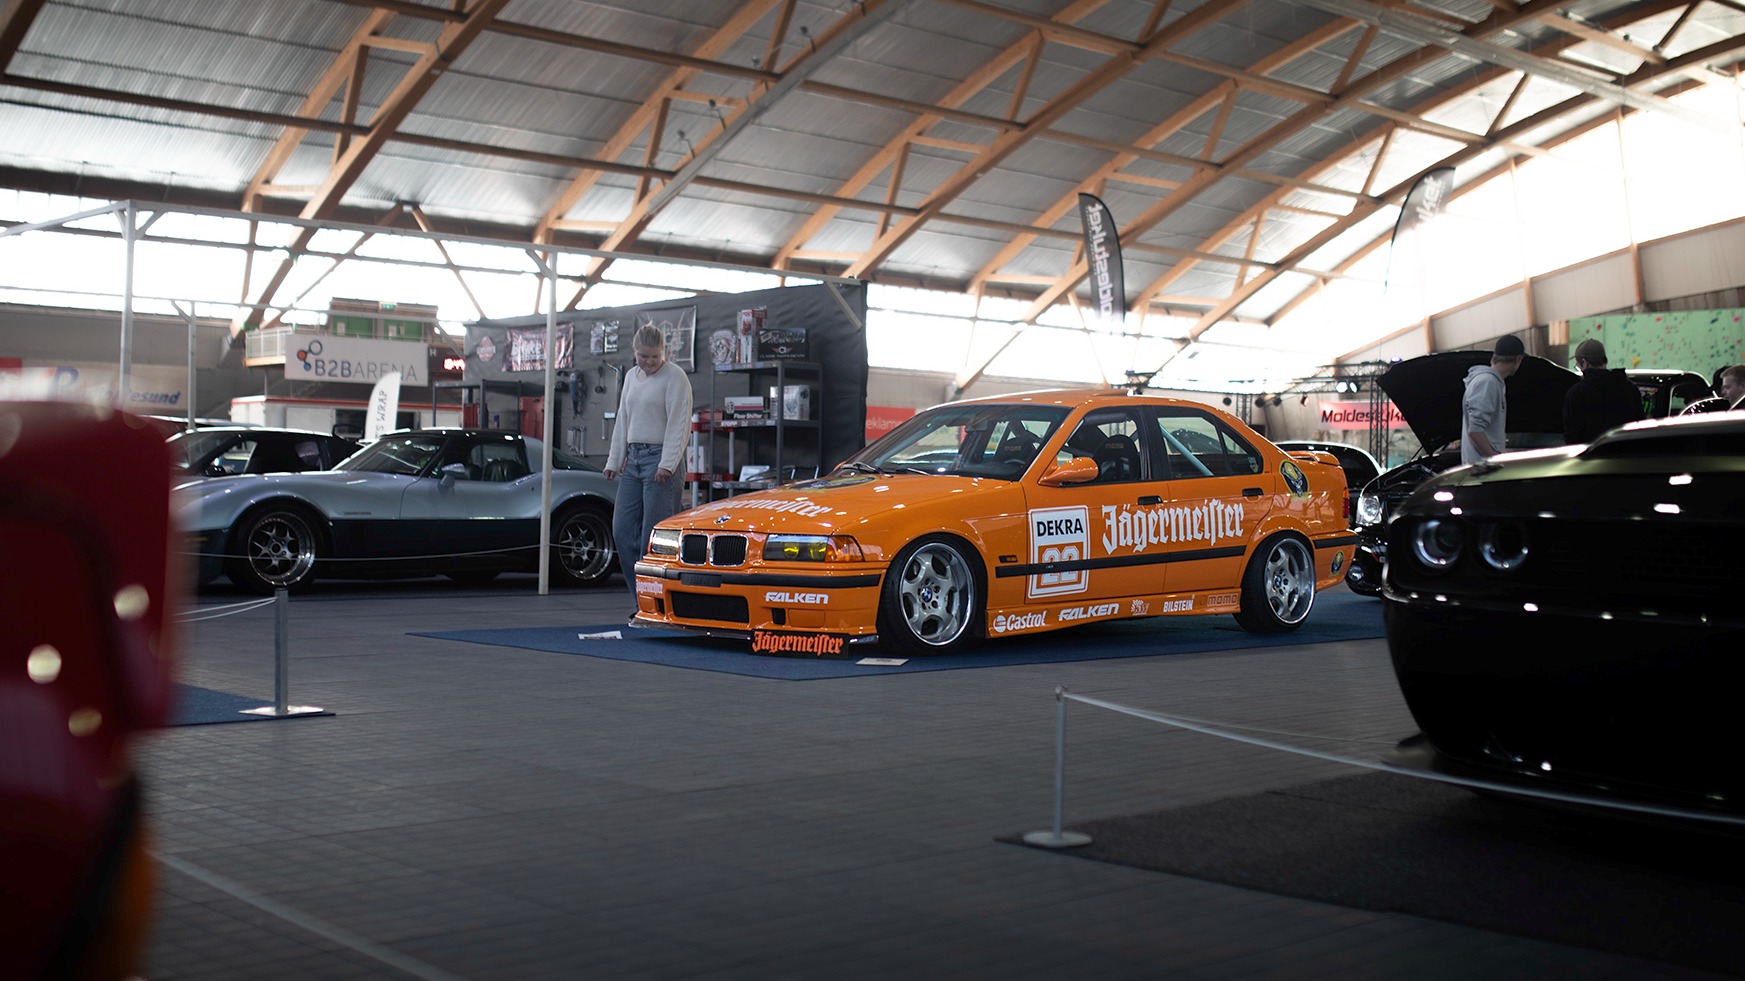 Heftig bygget BMW E36 med ikonisk Jägermeister-dekor.